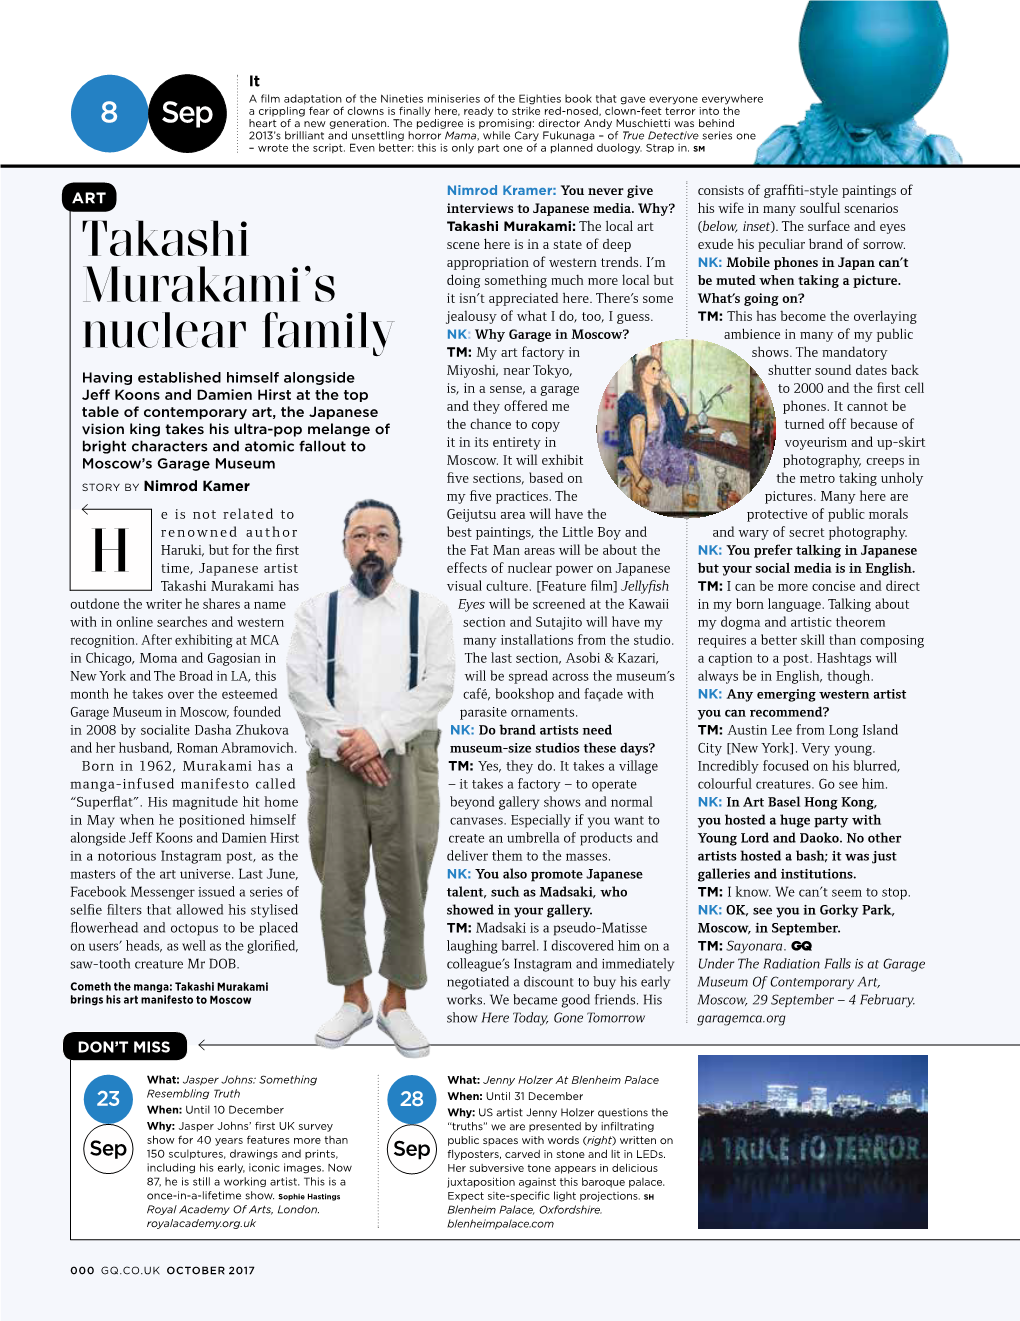 Takashi Murakami's Nuclear Family